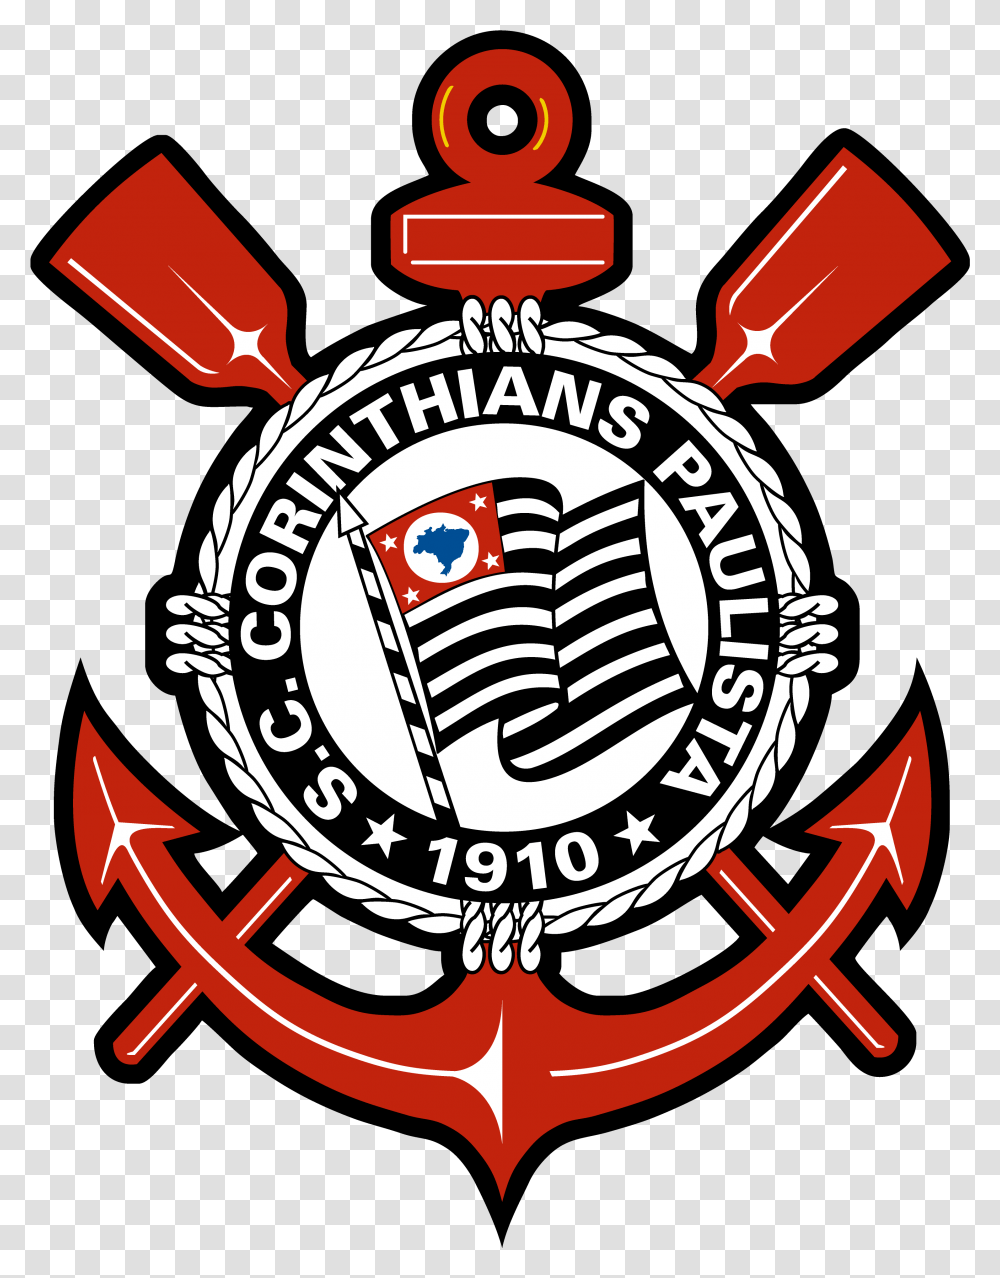 Logo Corinthians Escudo Do Corinthians Em, Hook, Anchor, Emblem Transparent Png